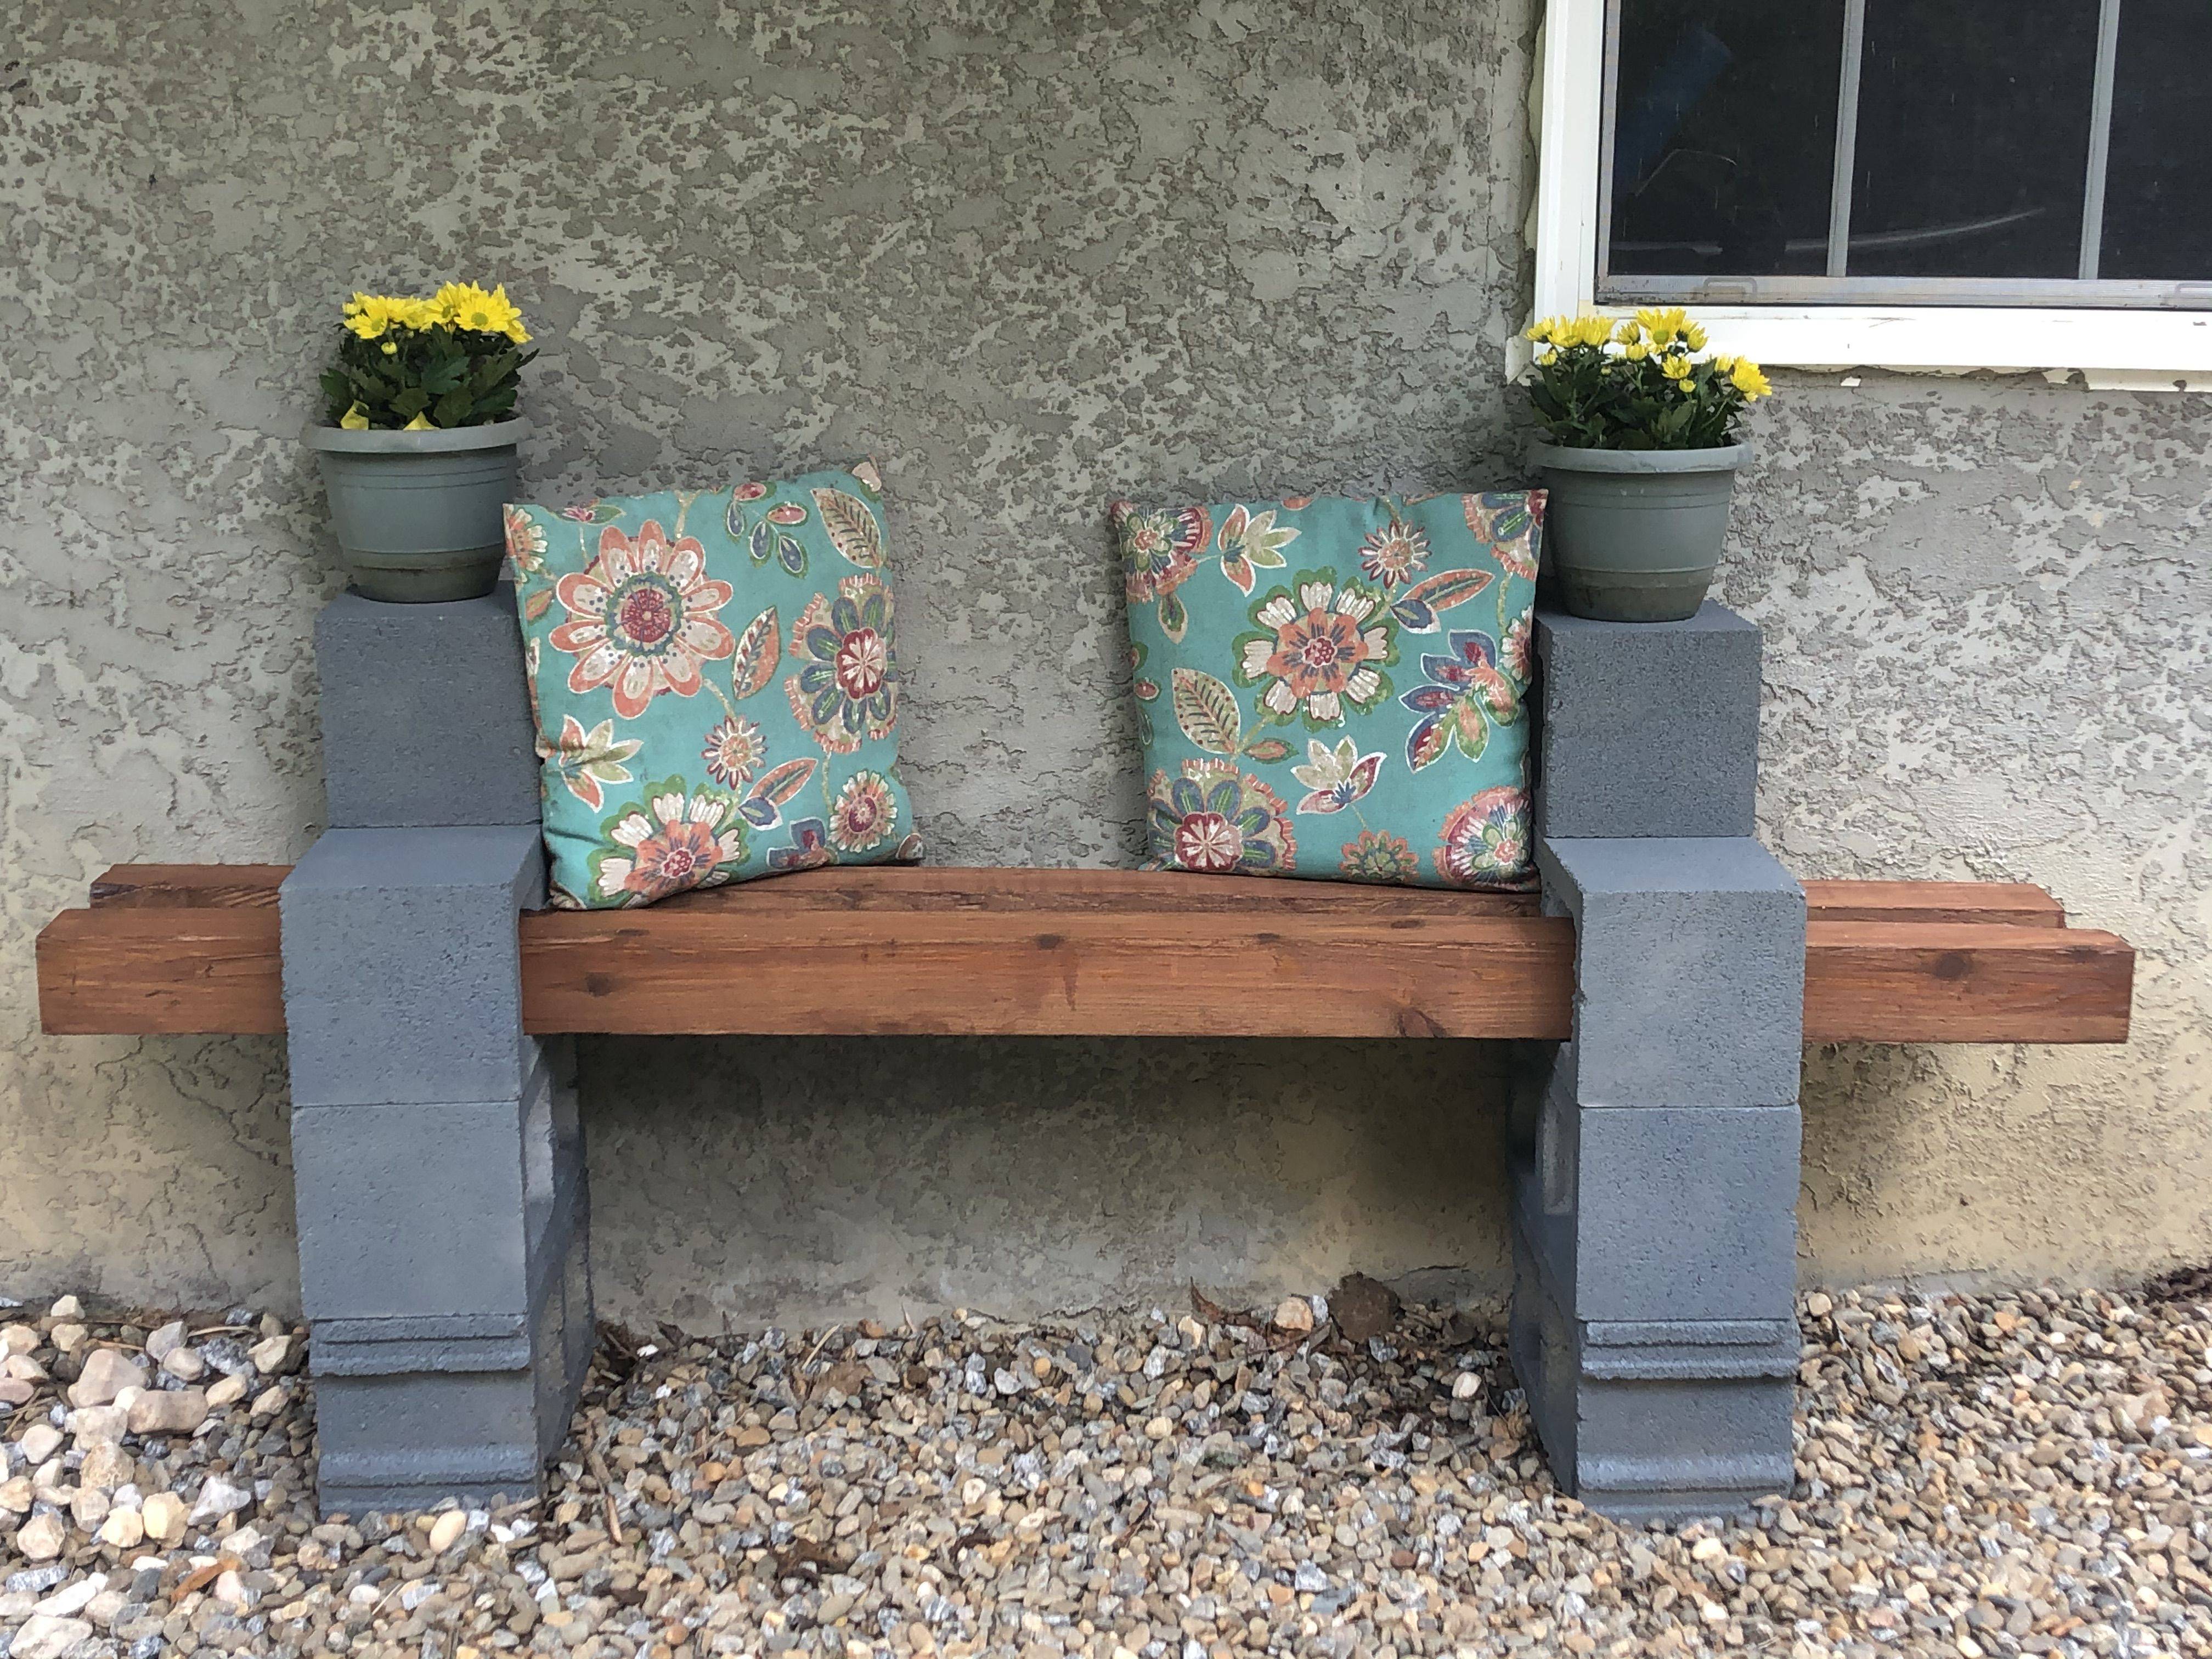 A Concrete Garden Bench